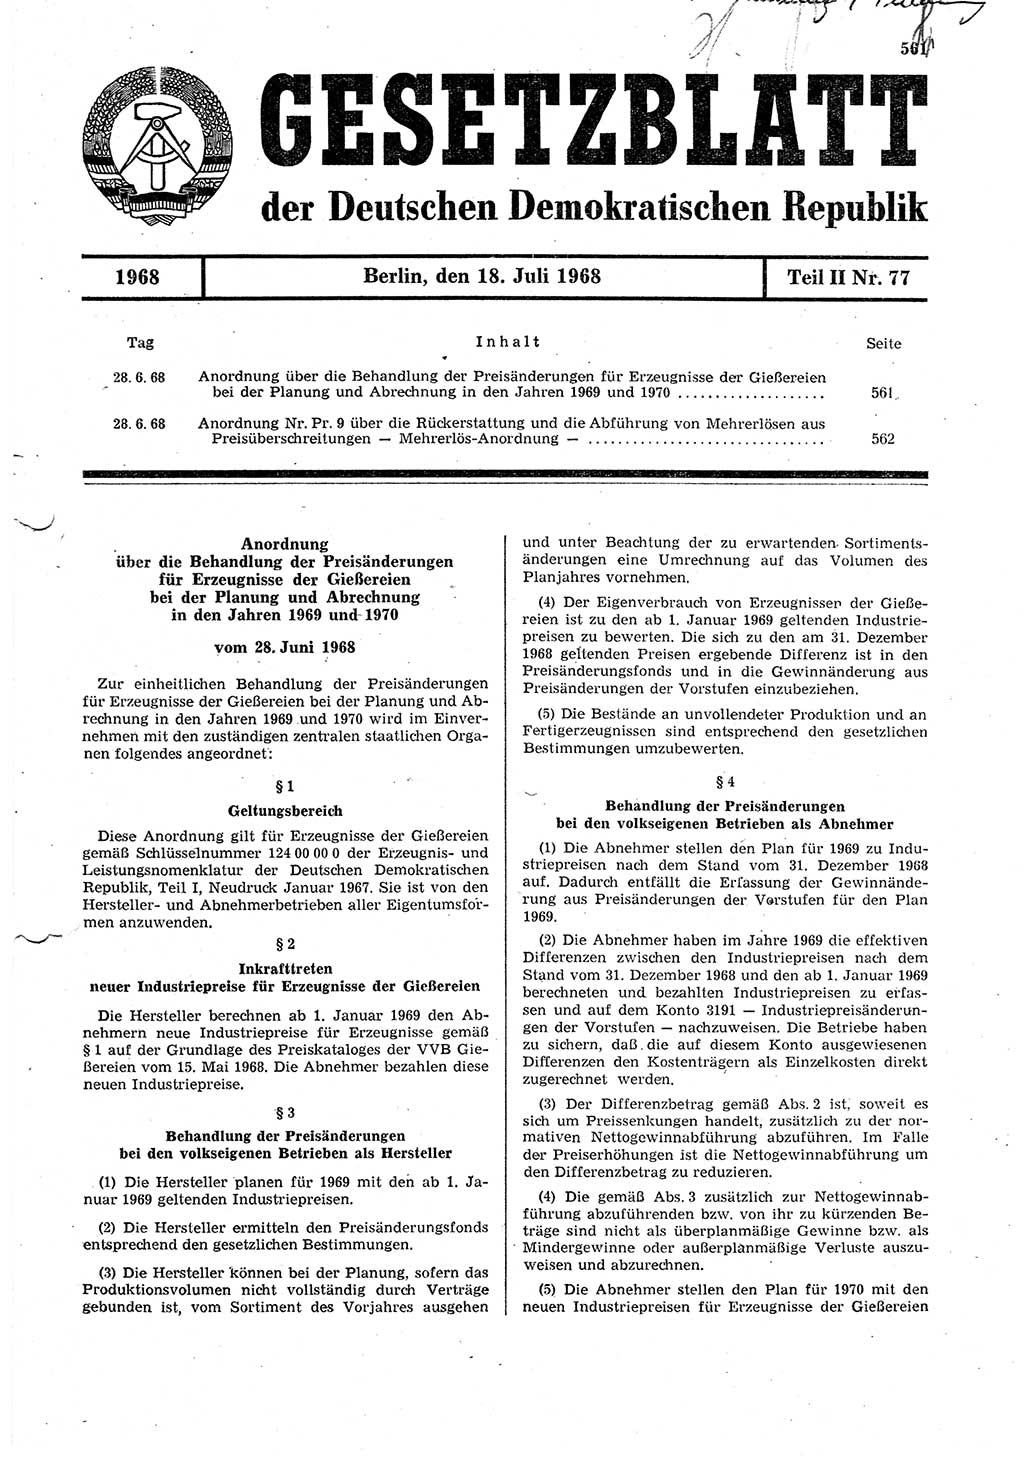 Gesetzblatt (GBl.) der Deutschen Demokratischen Republik (DDR) Teil ⅠⅠ 1968, Seite 561 (GBl. DDR ⅠⅠ 1968, S. 561)